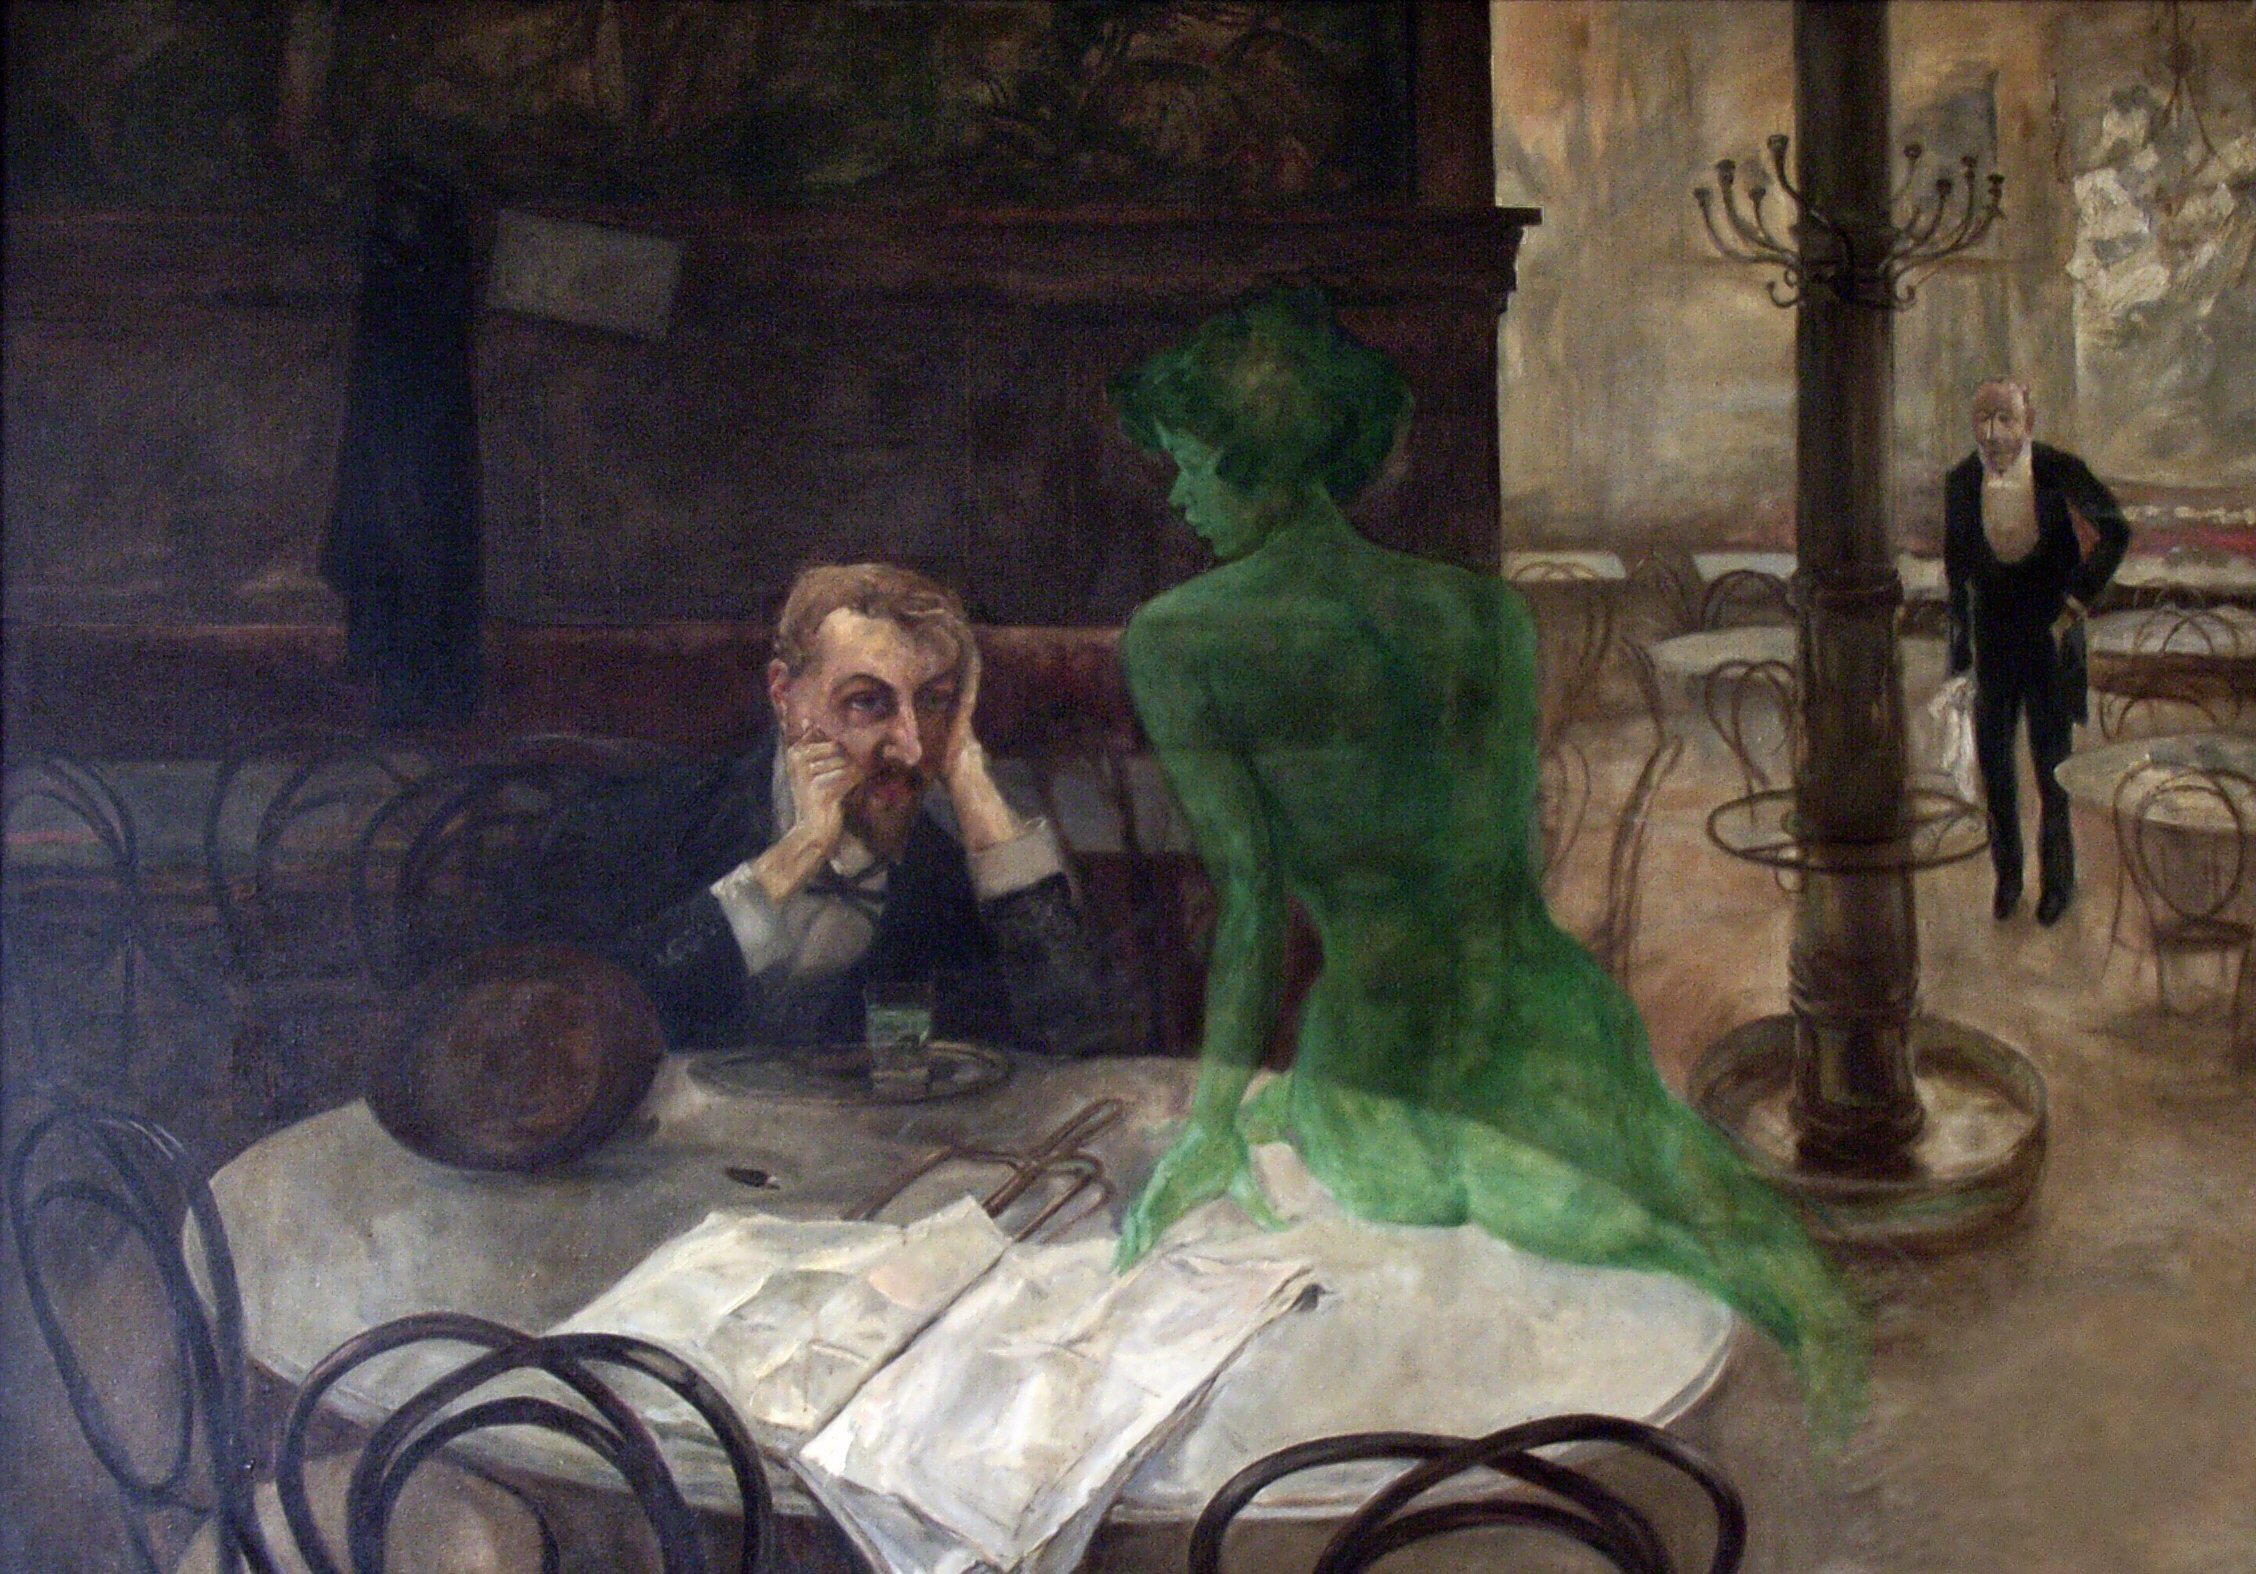 Pijak absyntu by Viktor Oliva - 1901 